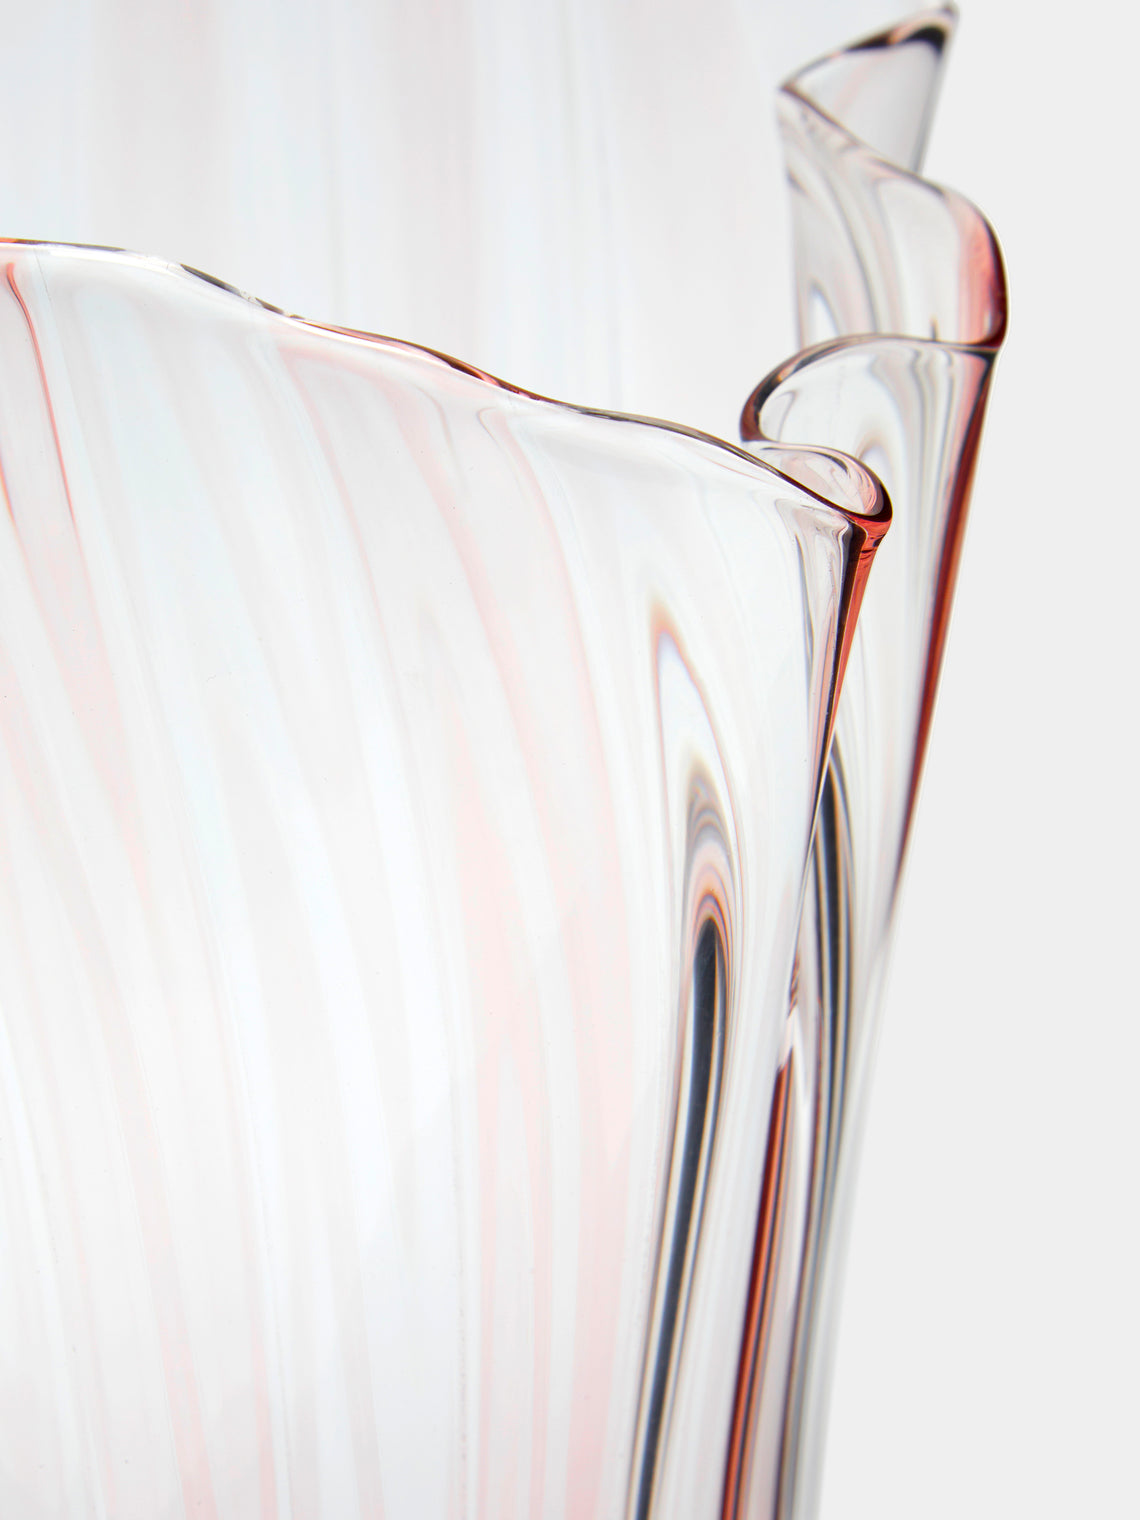 Venini - Fazzoletto a Canne Hand-Blown Murano Glass Medium Vase - Pink - ABASK